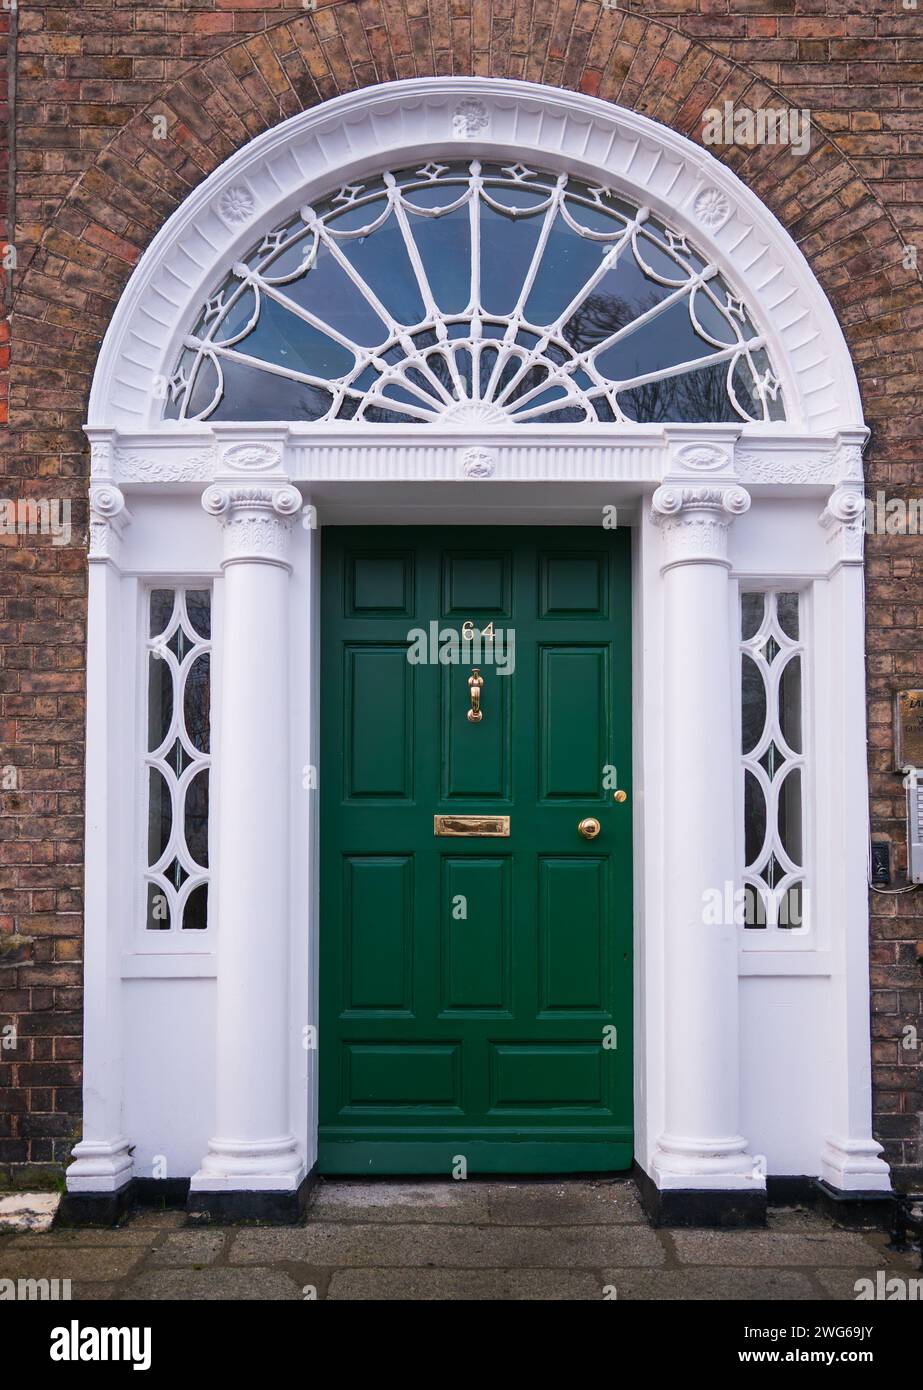 Porta georgiana verde colorata a Dublino, Irlanda. Porte storiche dipinte in diversi colori possono essere viste a dublino. Foto Stock